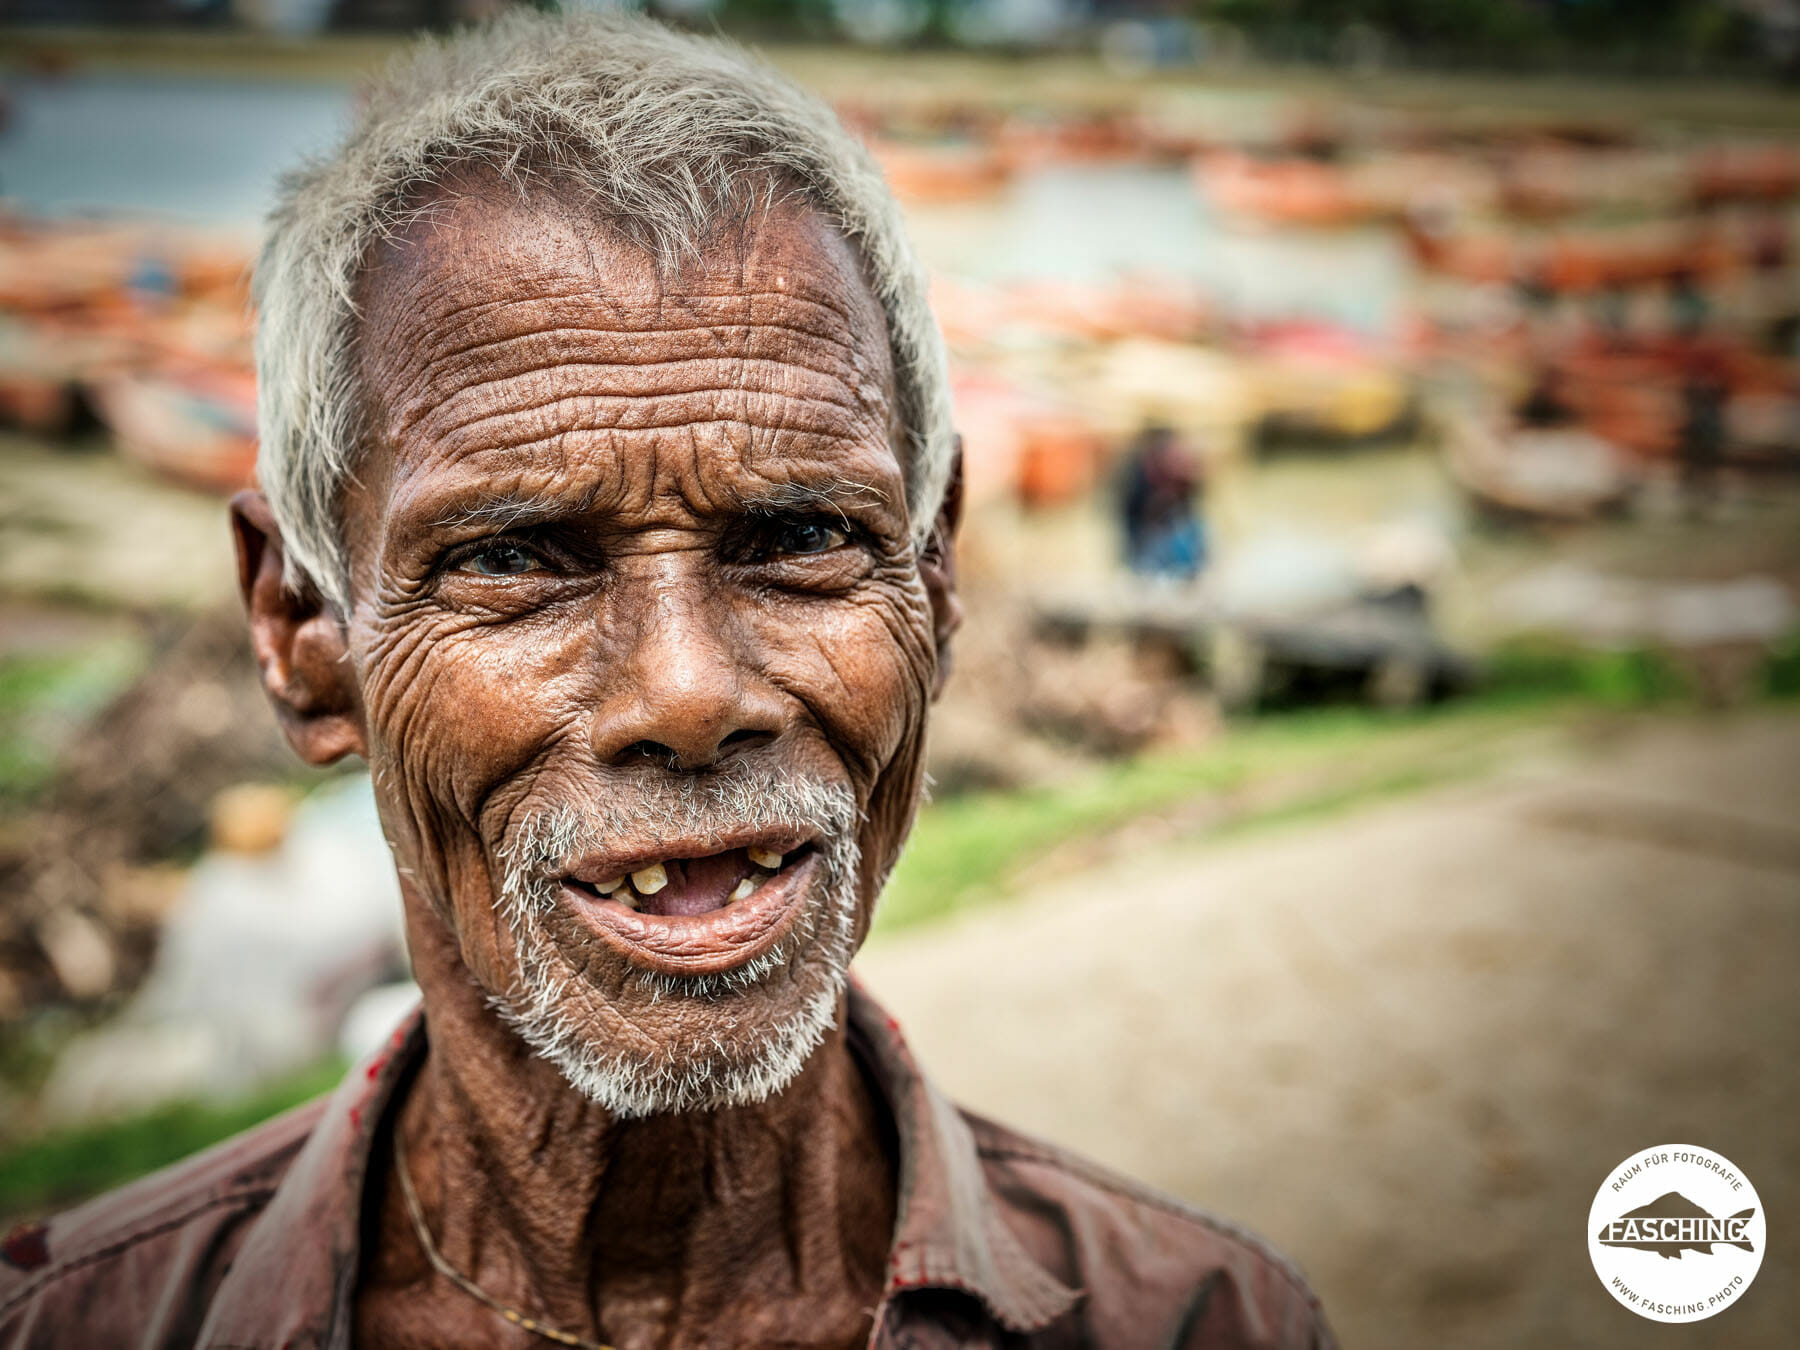 Reinhard und Luca Fasching reisten zusammen nach Bangladesh um eine Dokumentation über Shipbreaking in diesem Land zu fotografieren